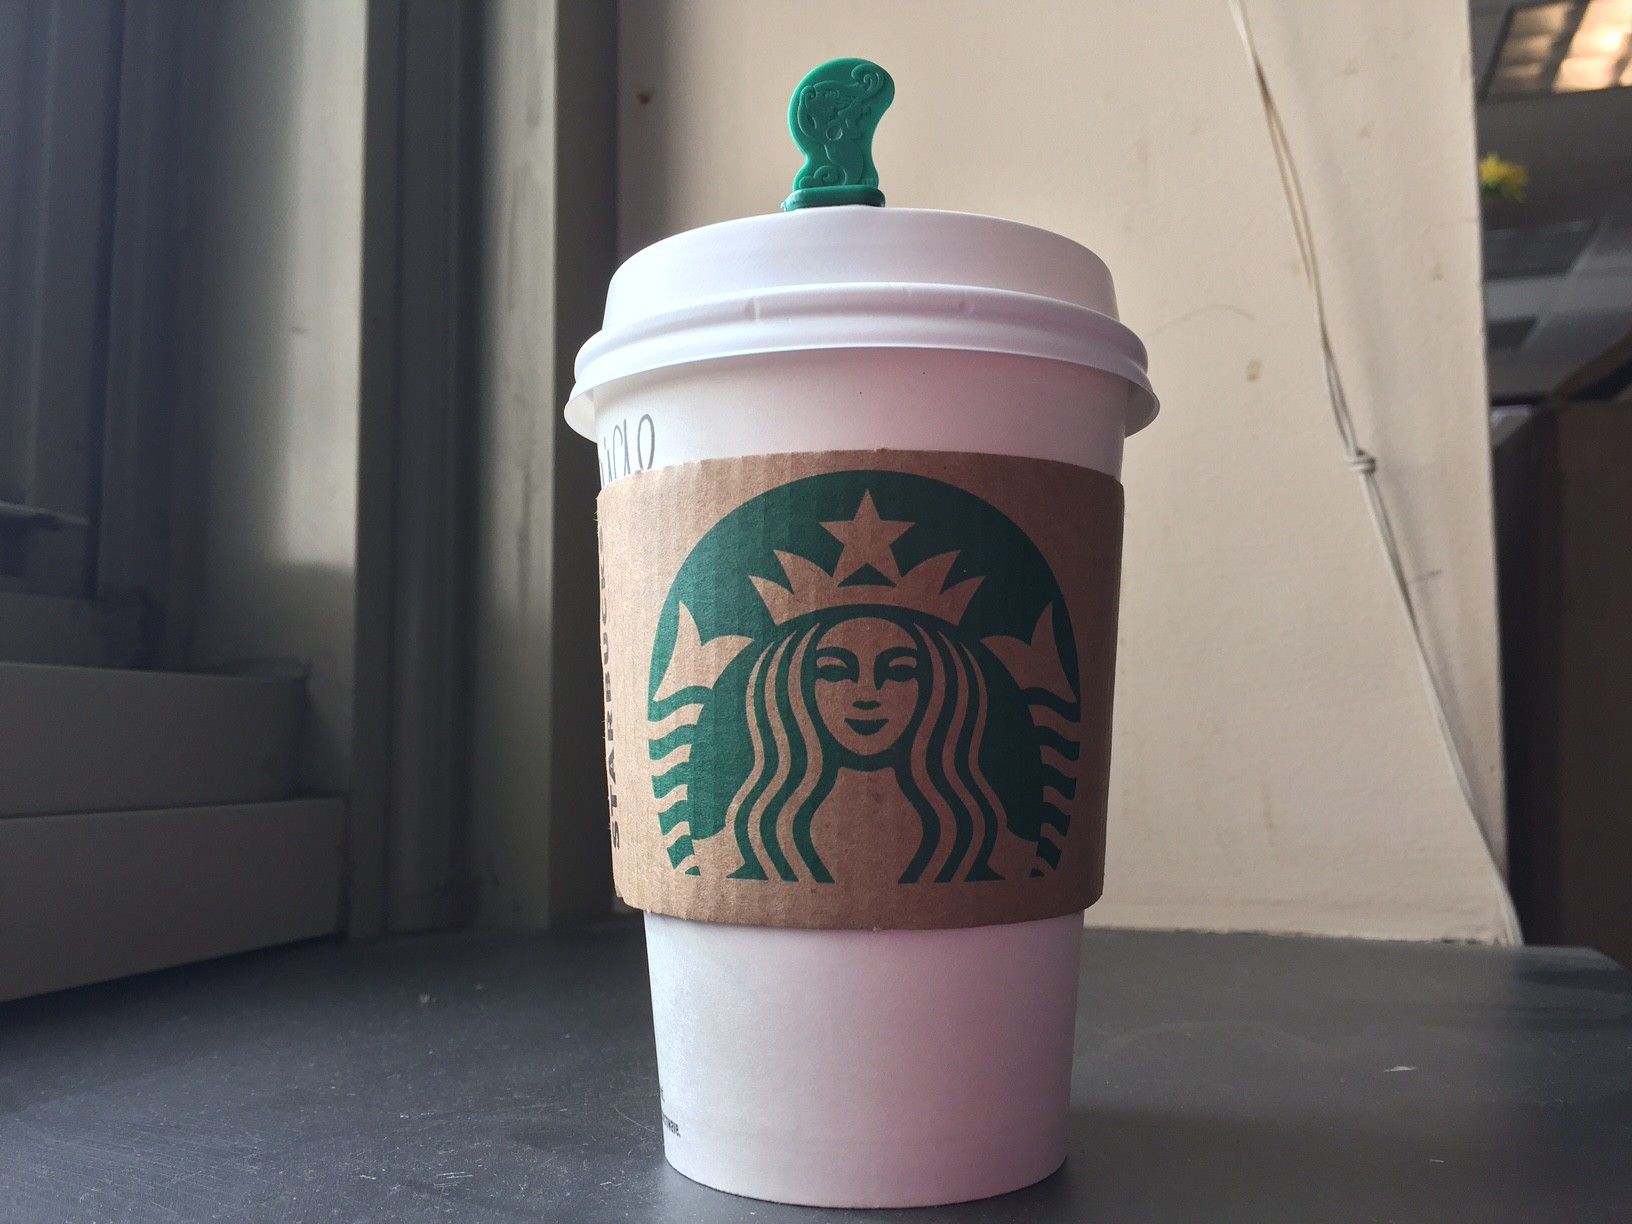 Solving the mystery of Starbucks little green sticks